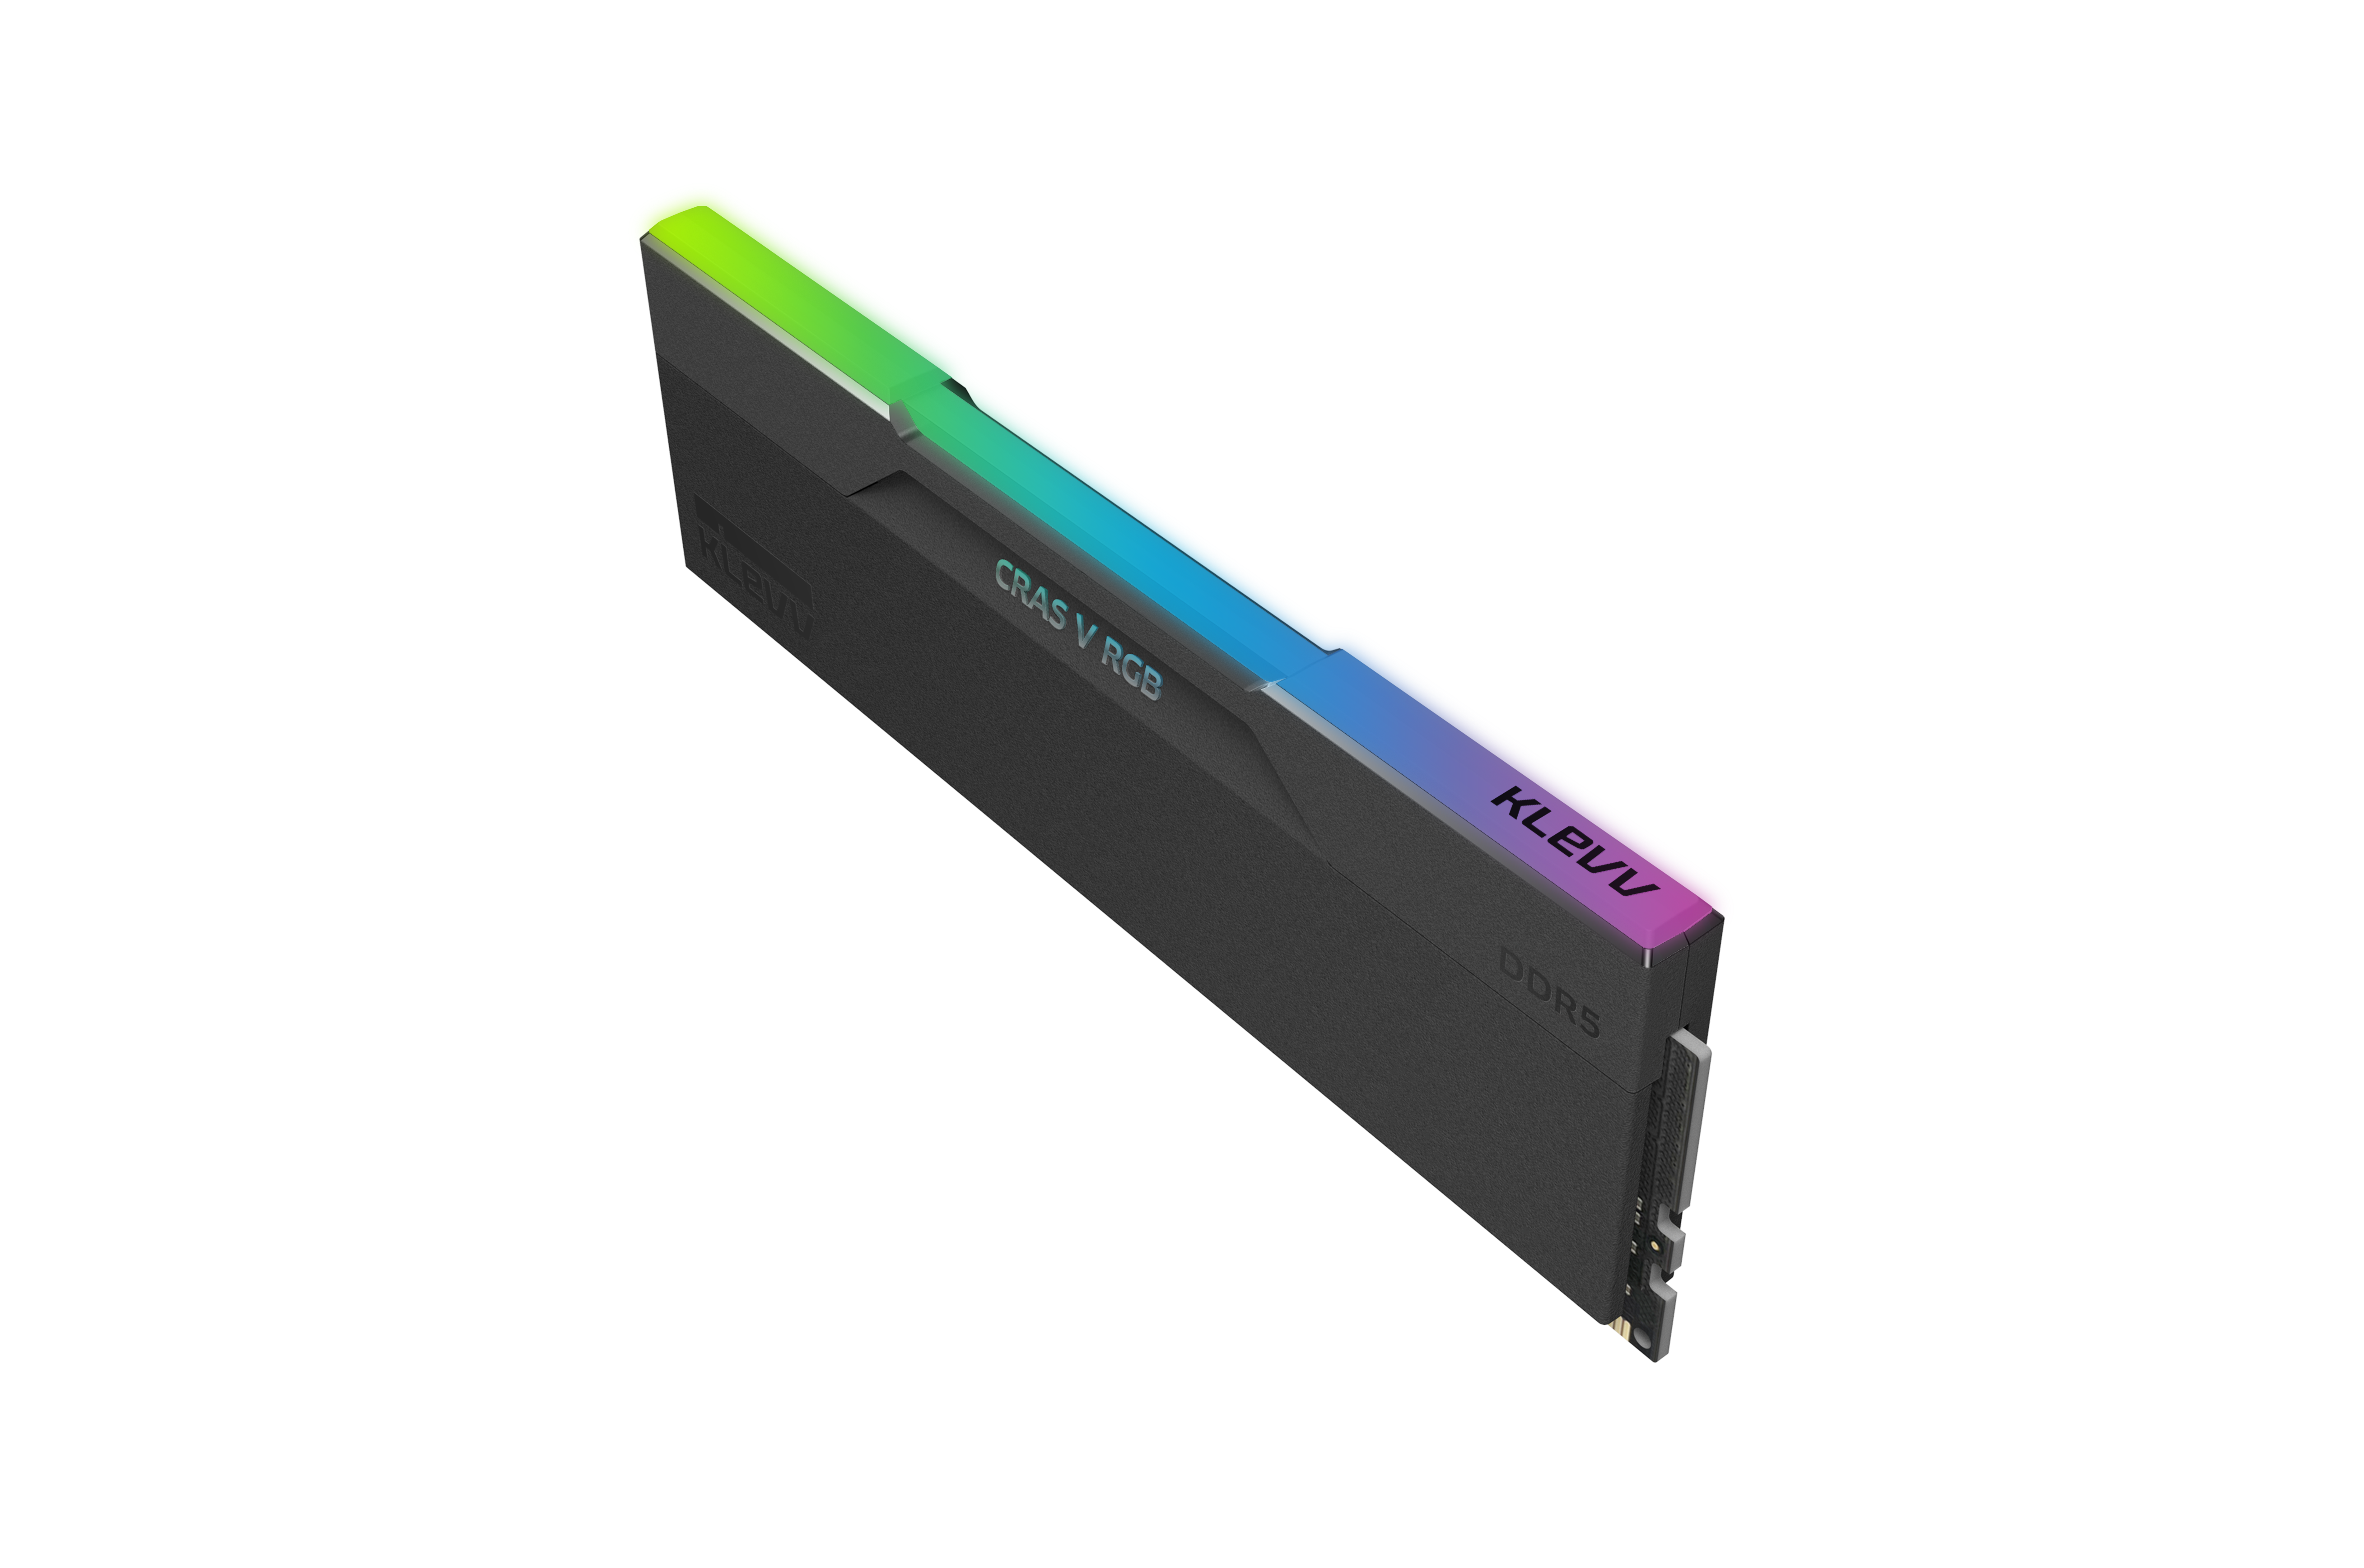 KLEVV CRAS V RGB DDR5 6400 48GB Kit (2x24GB) CV-KD5KGUD80-64A320G